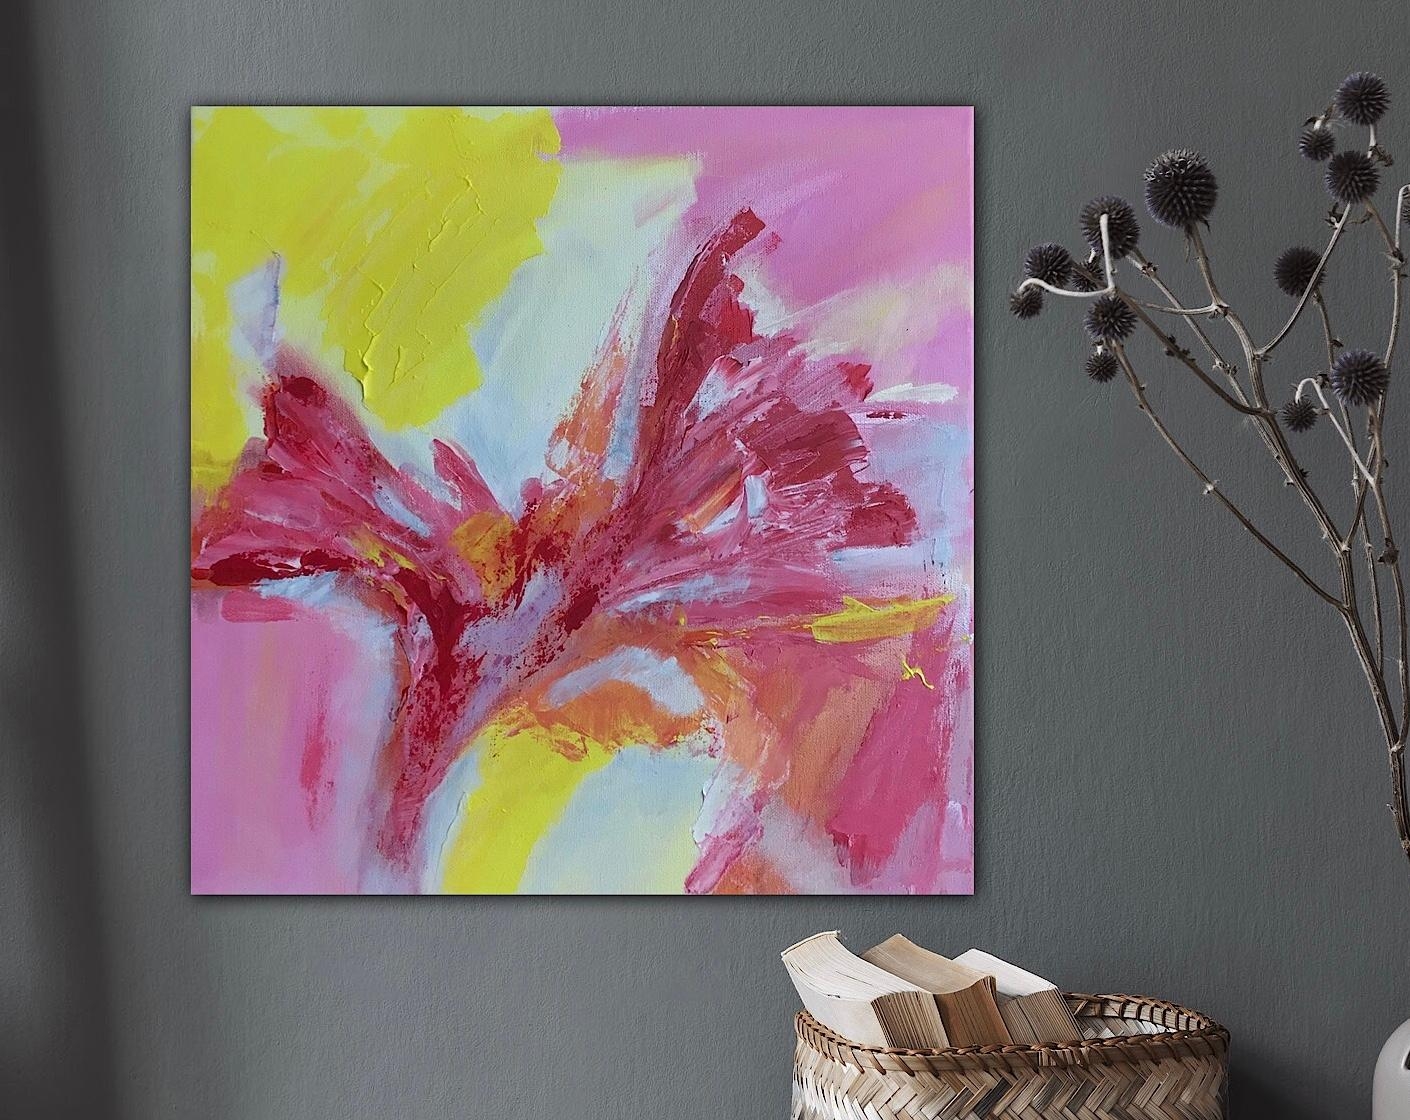 💕 Bunt, farbenfroh und fröhlich 40 x 40 cm 
#Farbe #deko #art #couchliebe #wanddeko #couchliebt